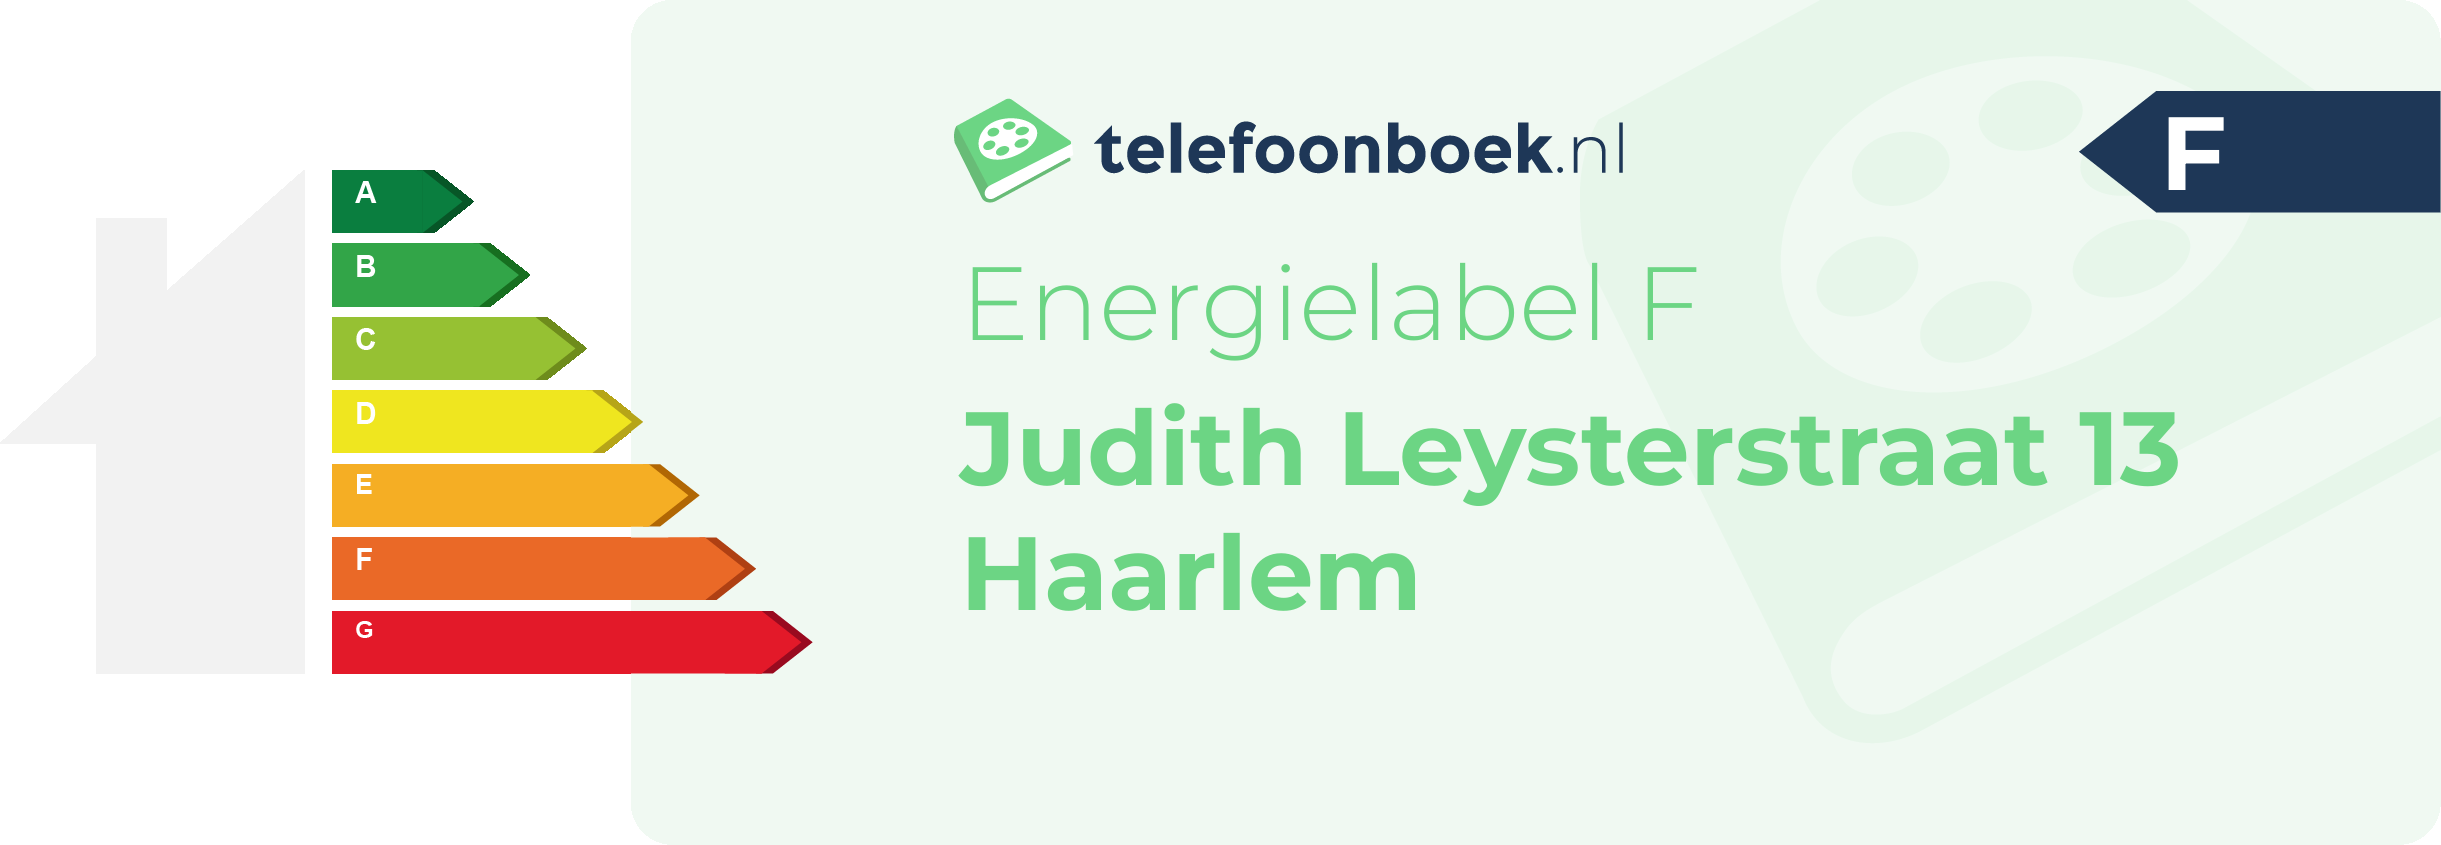 Energielabel Judith Leysterstraat 13 Haarlem